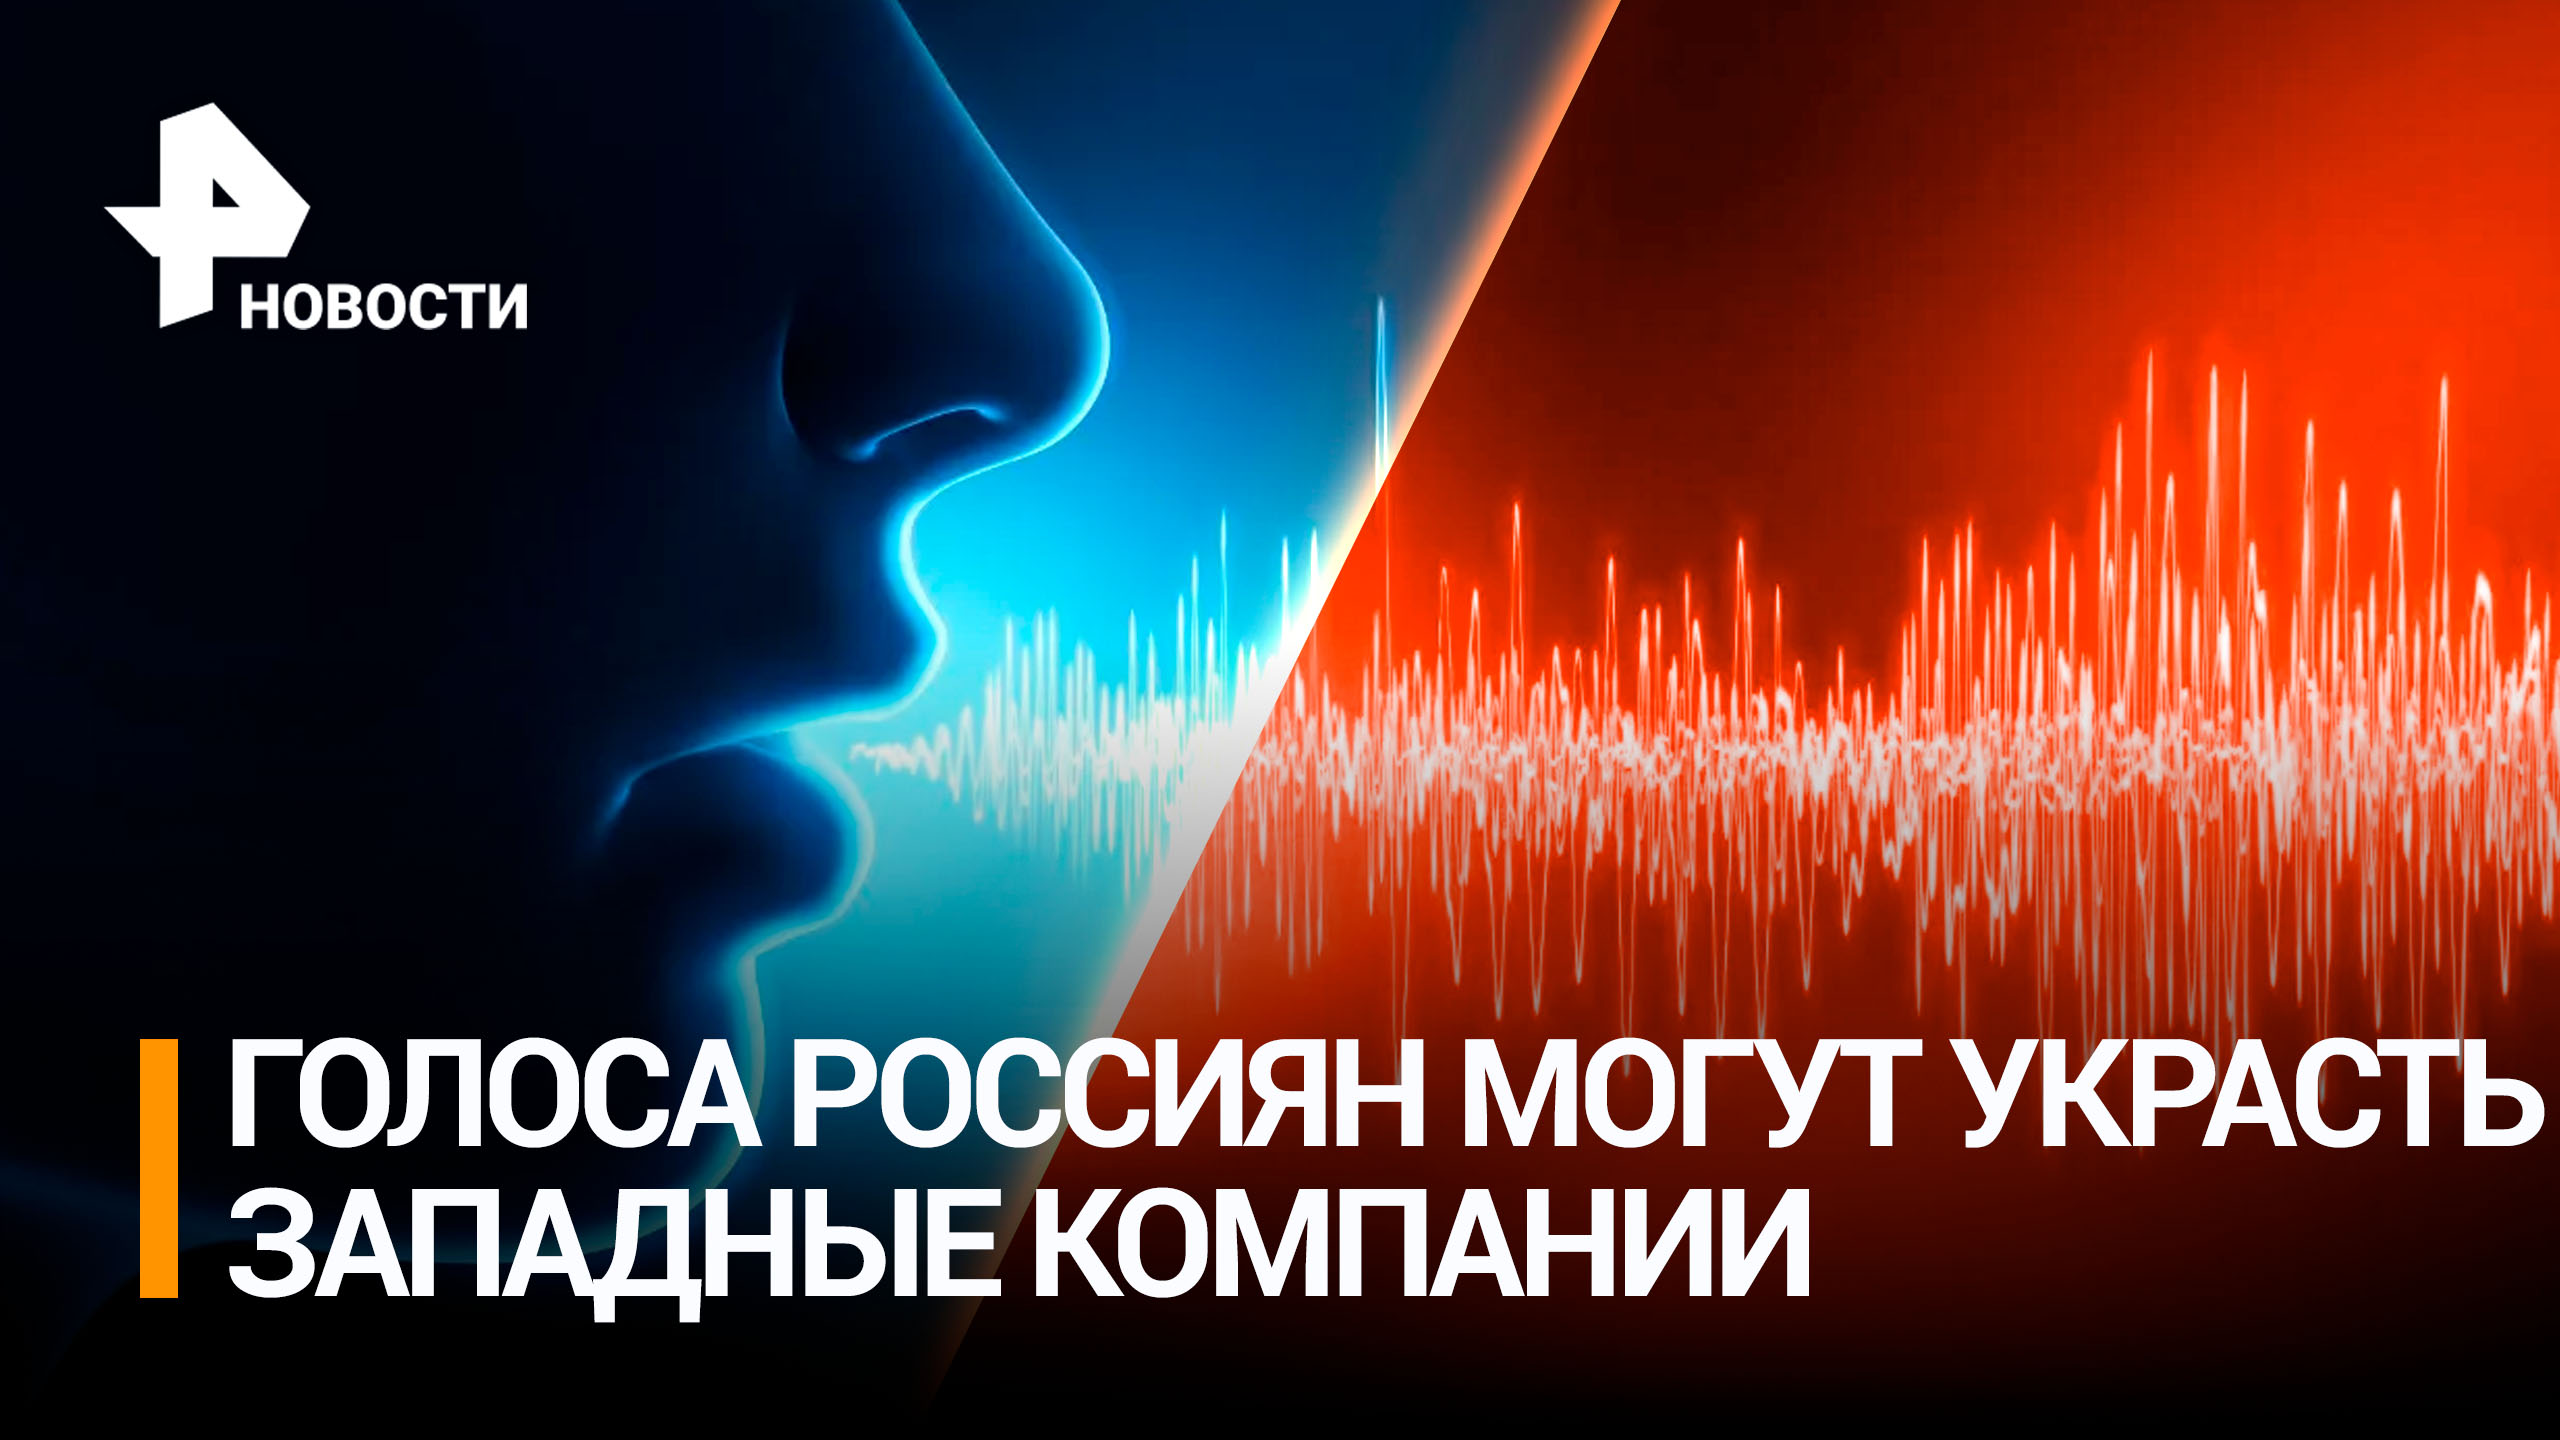 Записи голосов россиян рискуют оказаться в руках мошенников / РЕН Новости